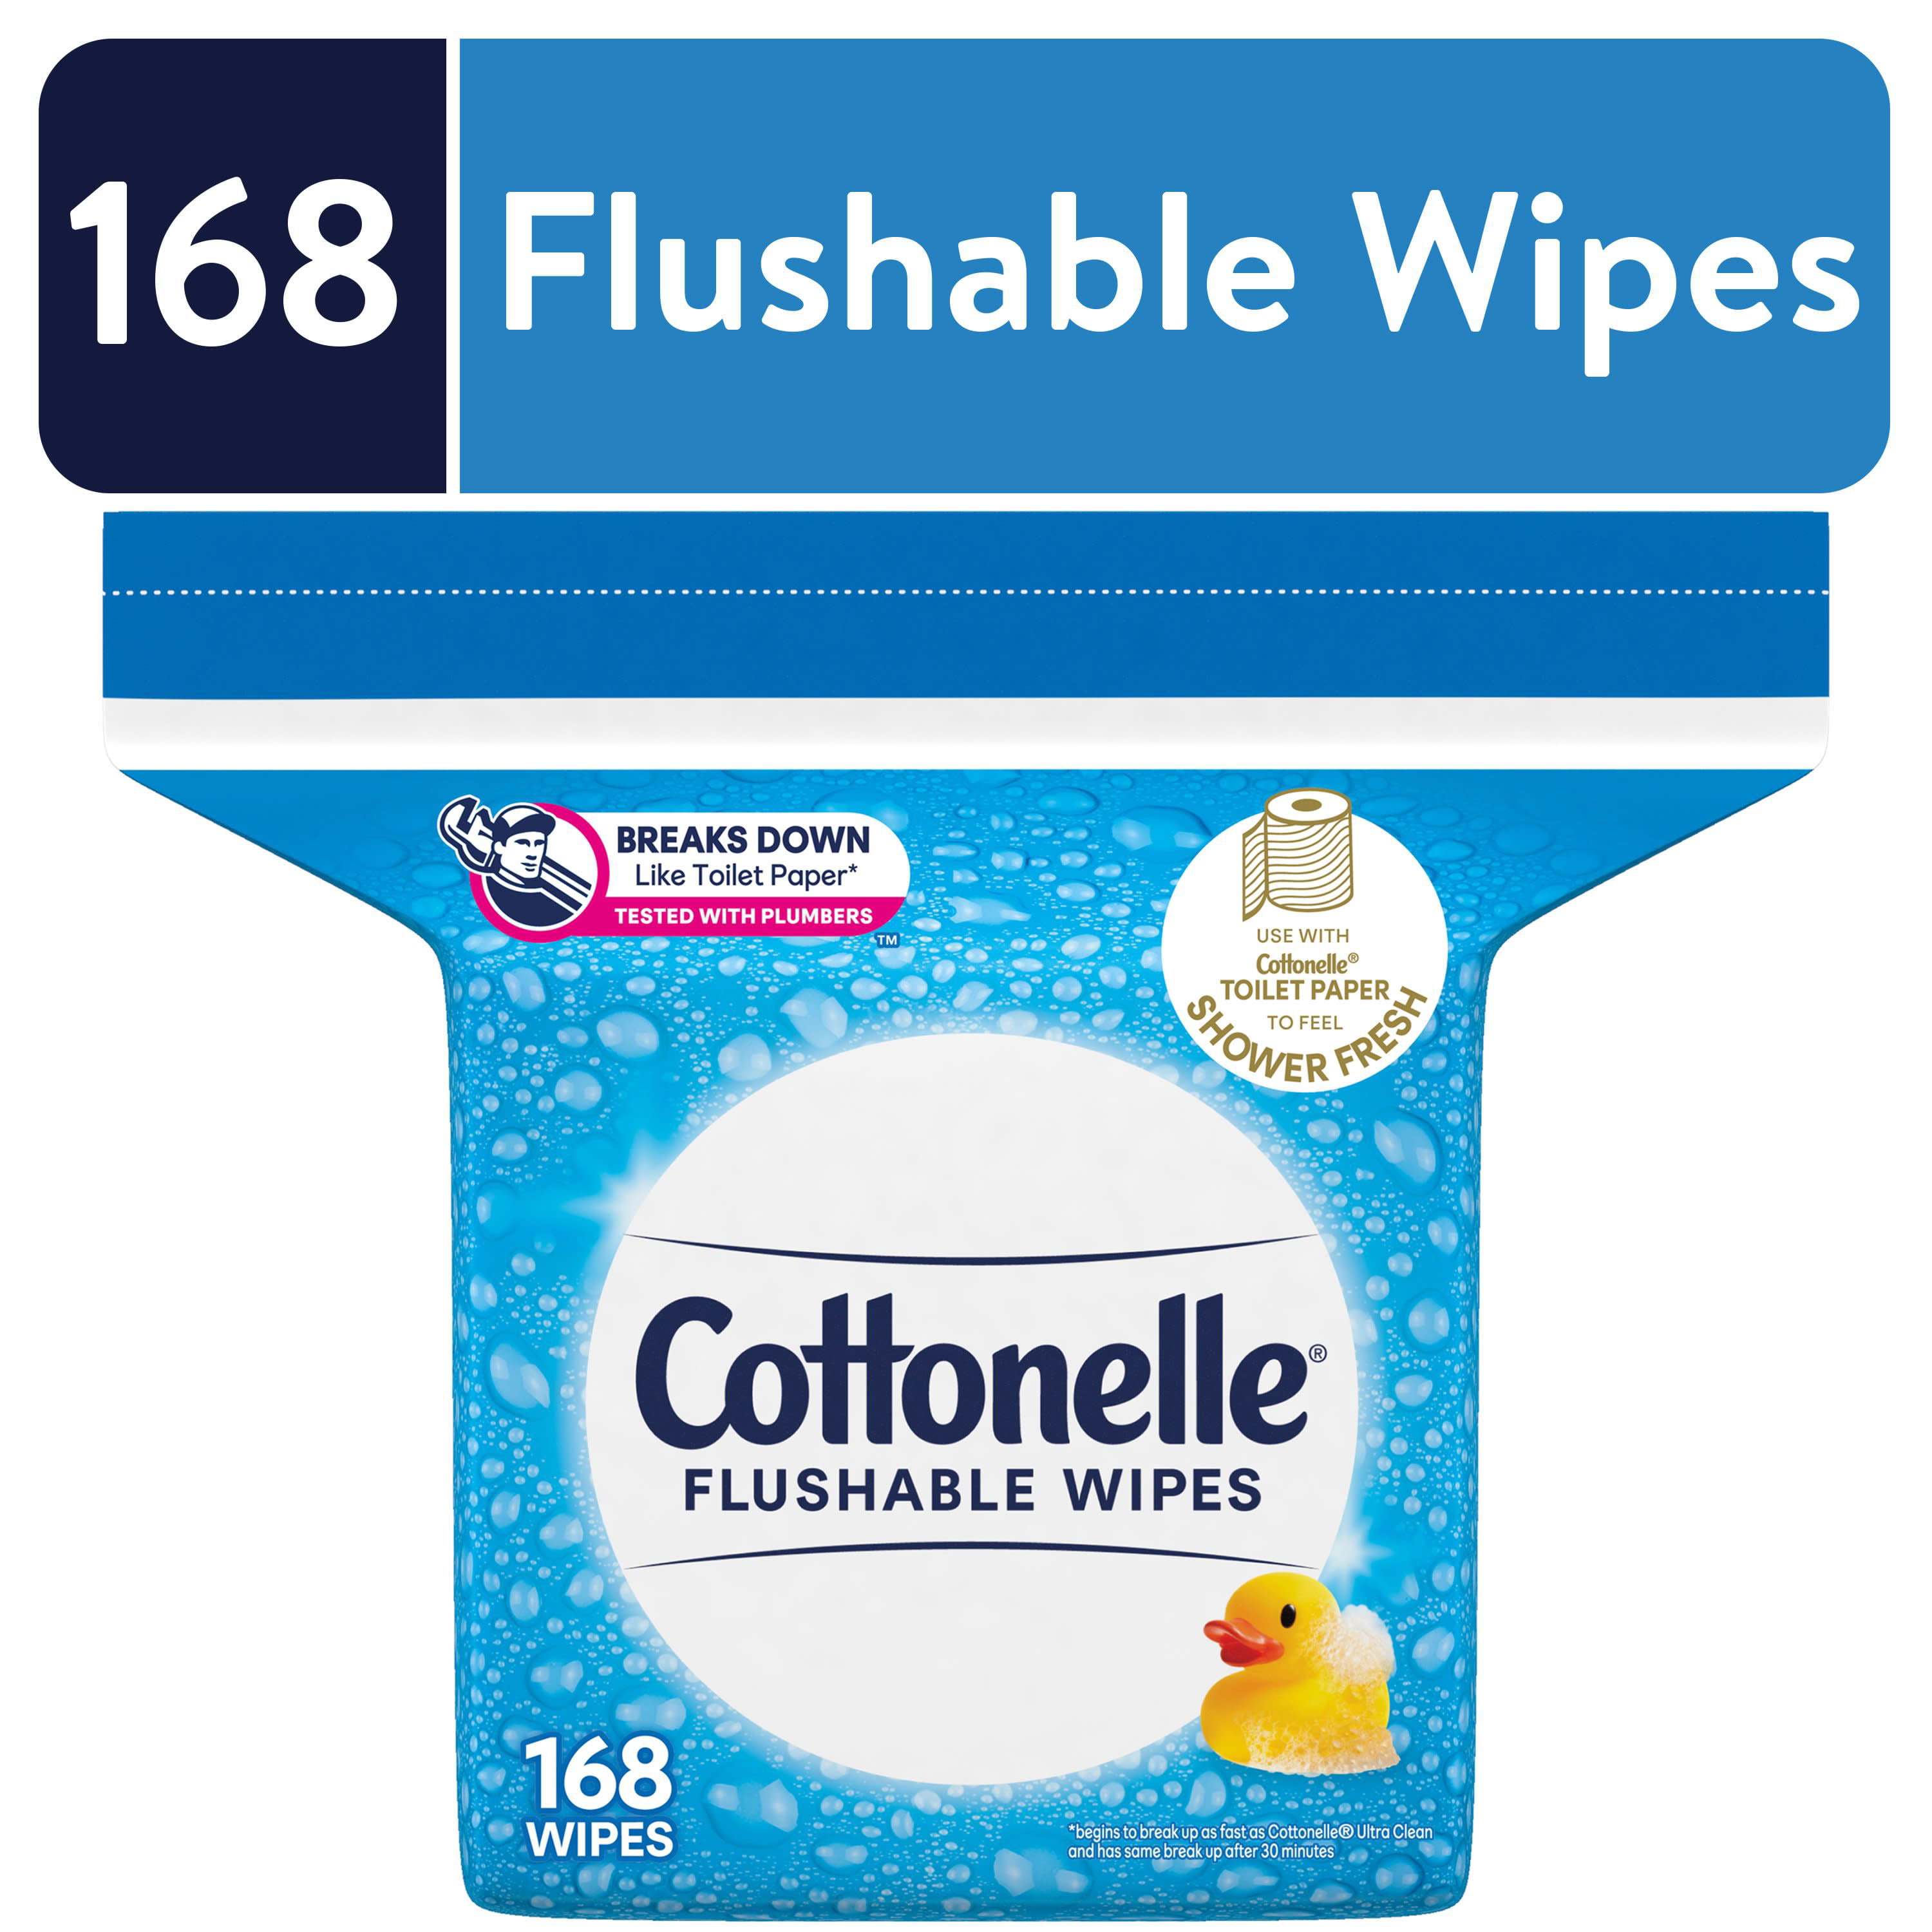 Flushable Wipes